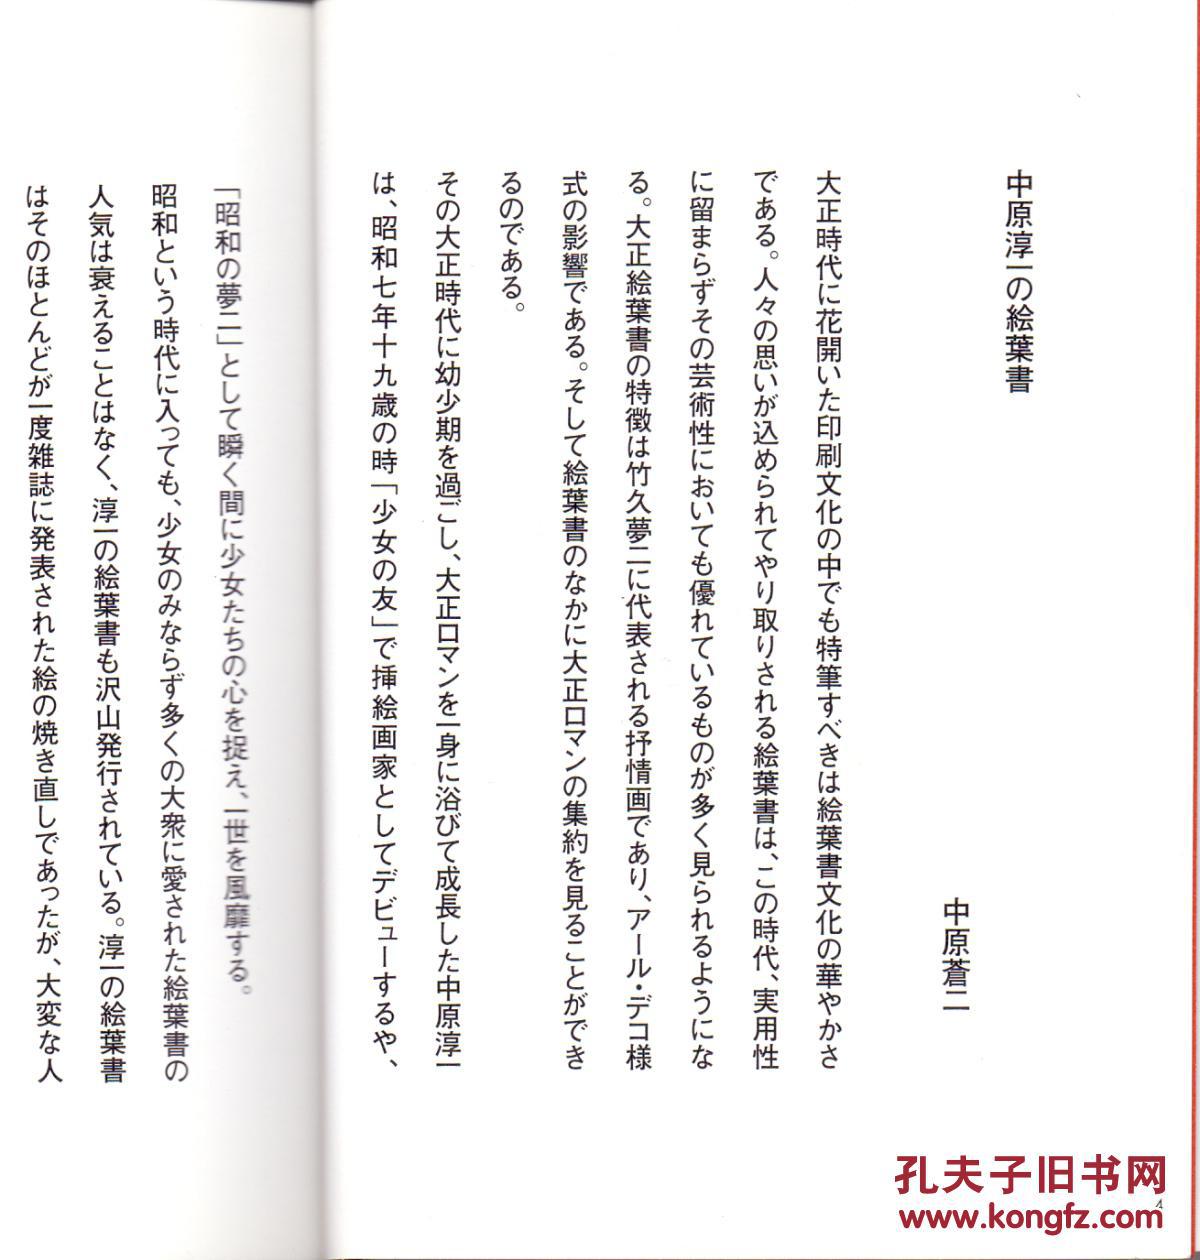 《中原淳一繪葉書繪本》中原蒼二編  日本寫真印刷株式會社  2004年